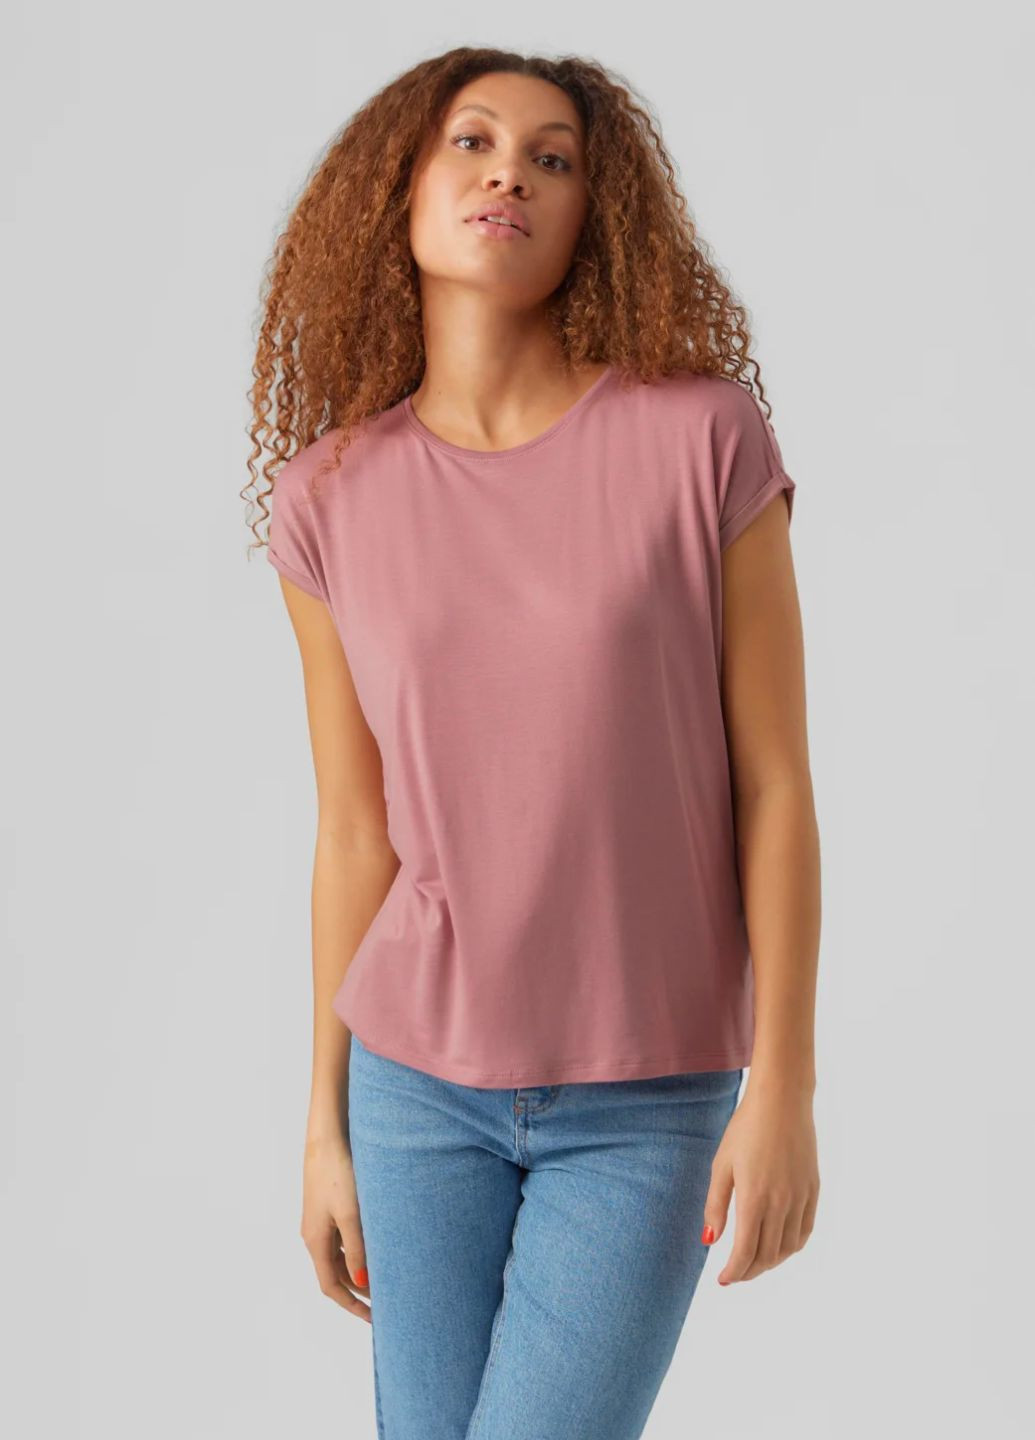 Розовая футболка женская однотонная розовая Vero Moda